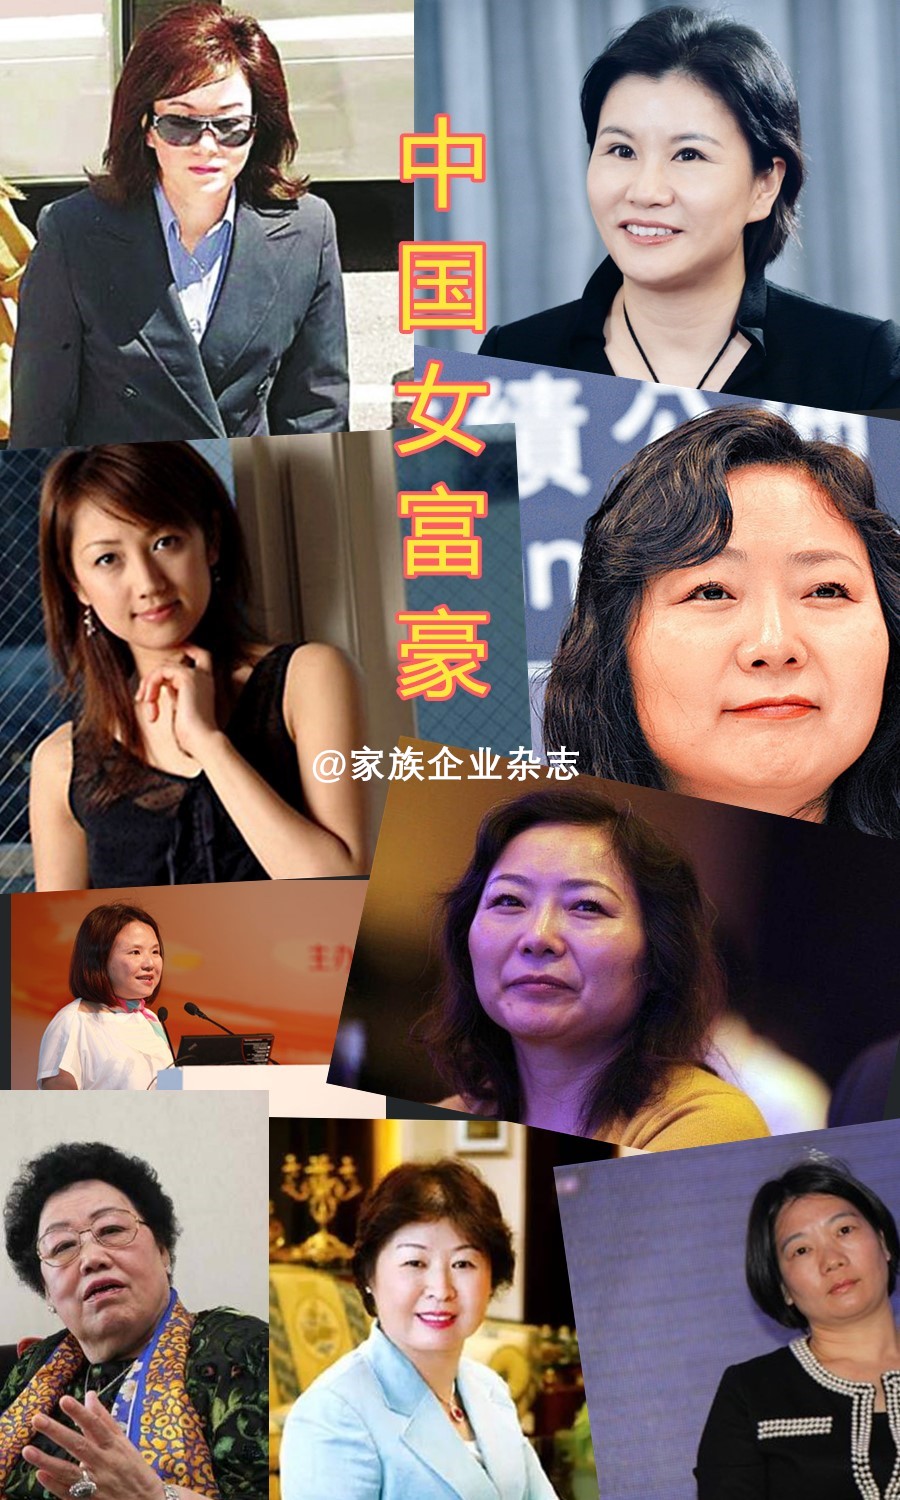 其中,年仅36岁的杨惠妍成为中国女首富,并且在平均年龄为54.财经 正文